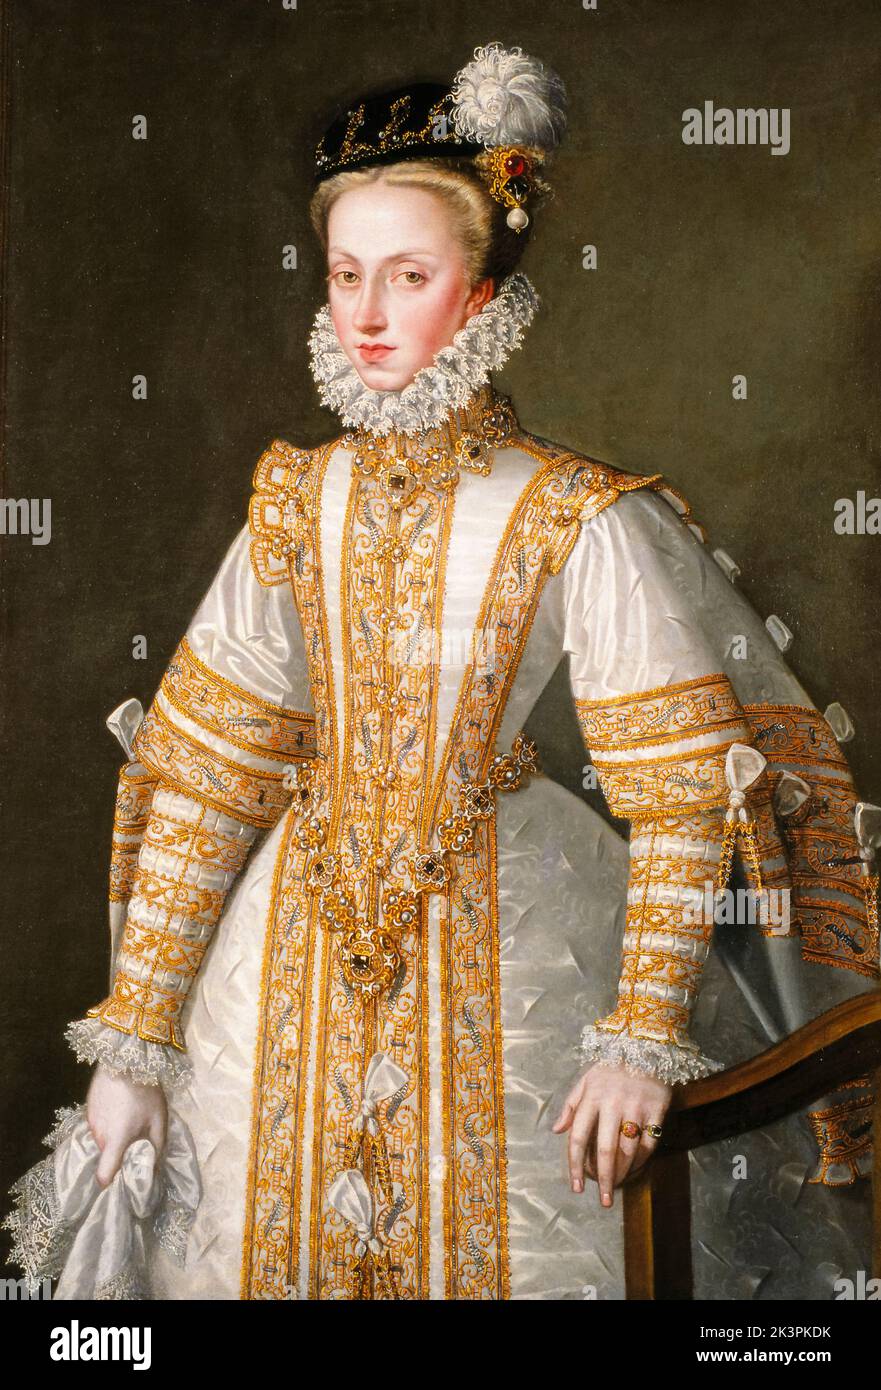 Ana de Austria (1549-1580), Reina Consort de España en matrimonio con su tío Felipe II de España, también brevemente Reina Consort de Portugal (septiembre-octubre de 1580), retrato en óleo sobre lienzo de Alonso Sánchez Coello, alrededor de 1571 Foto de stock